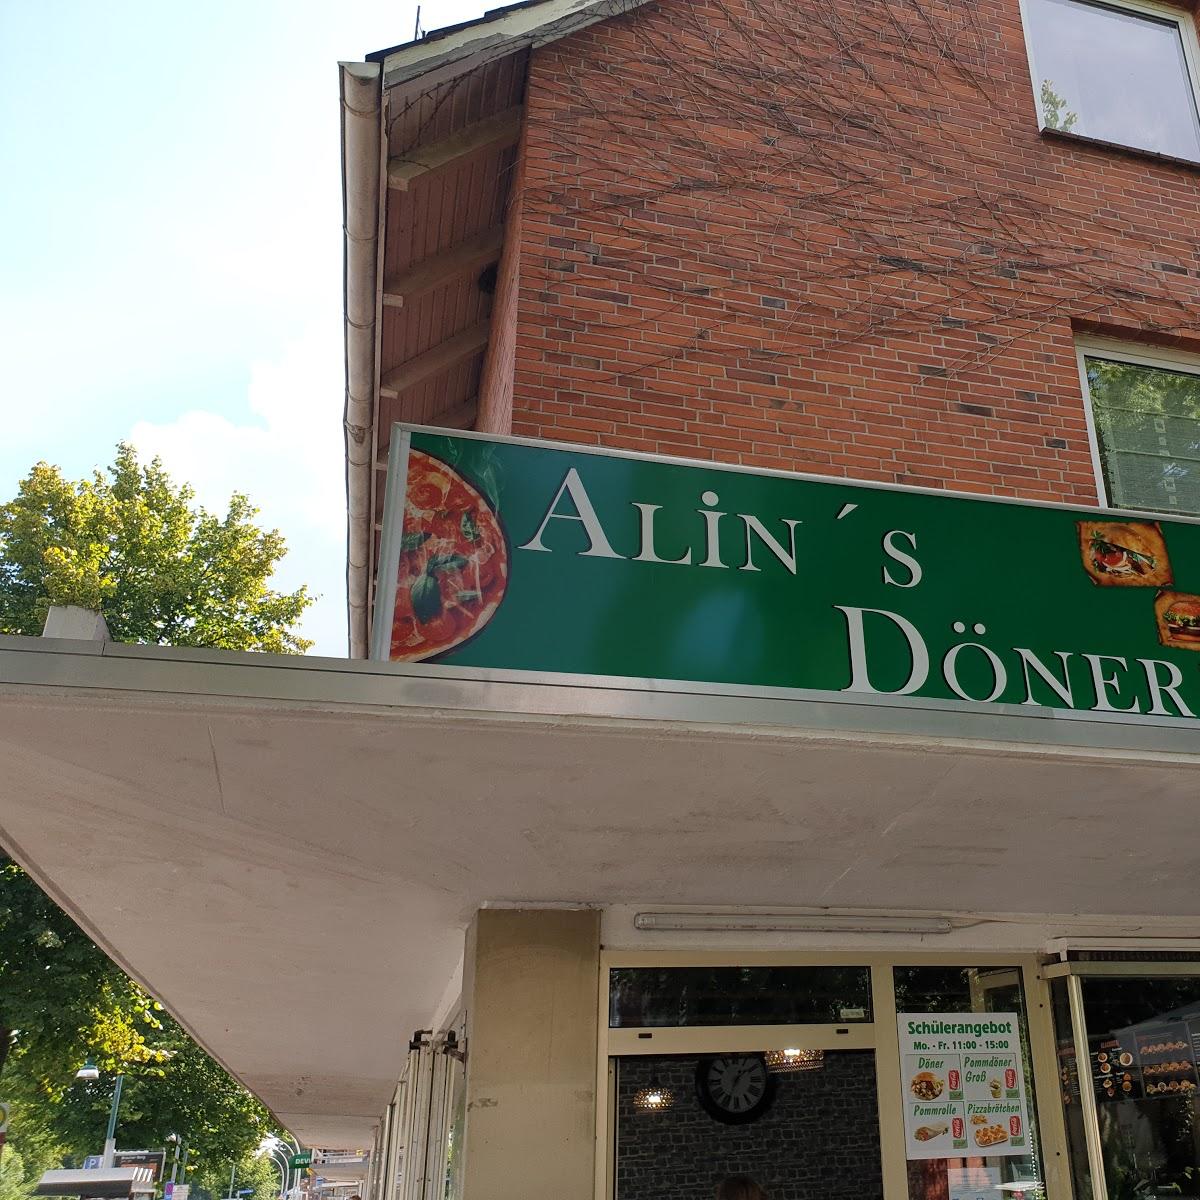 Restaurant "Alin